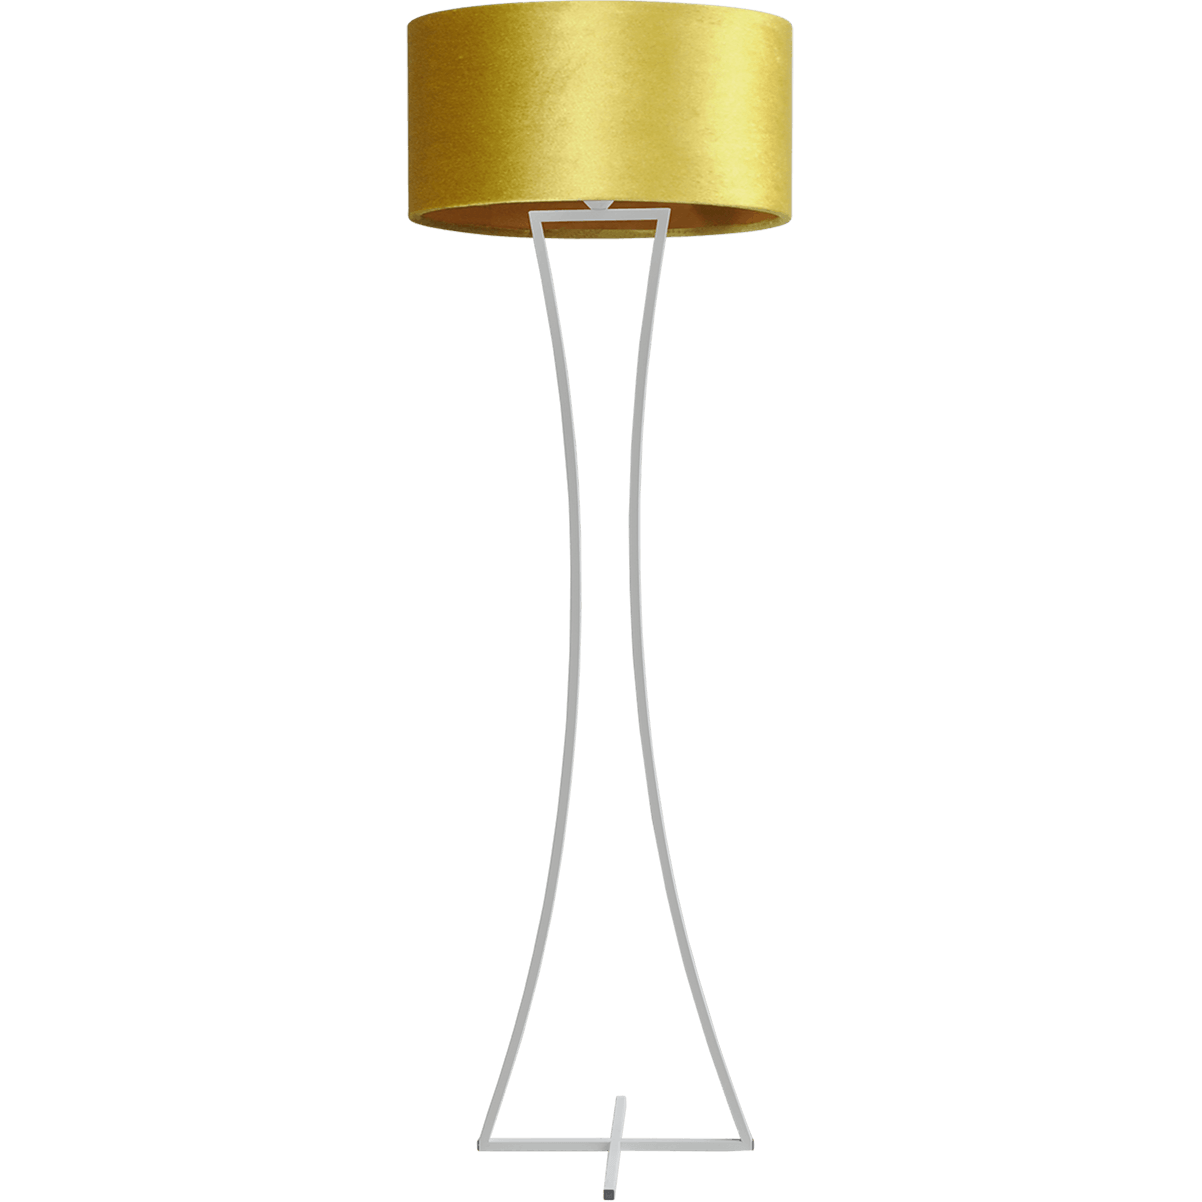 Vloerlamp Cross Woman wit structuur hoogte 158cm inclusief gele lampenkap Artik oker 52/52/25 - MASTERLIGHT